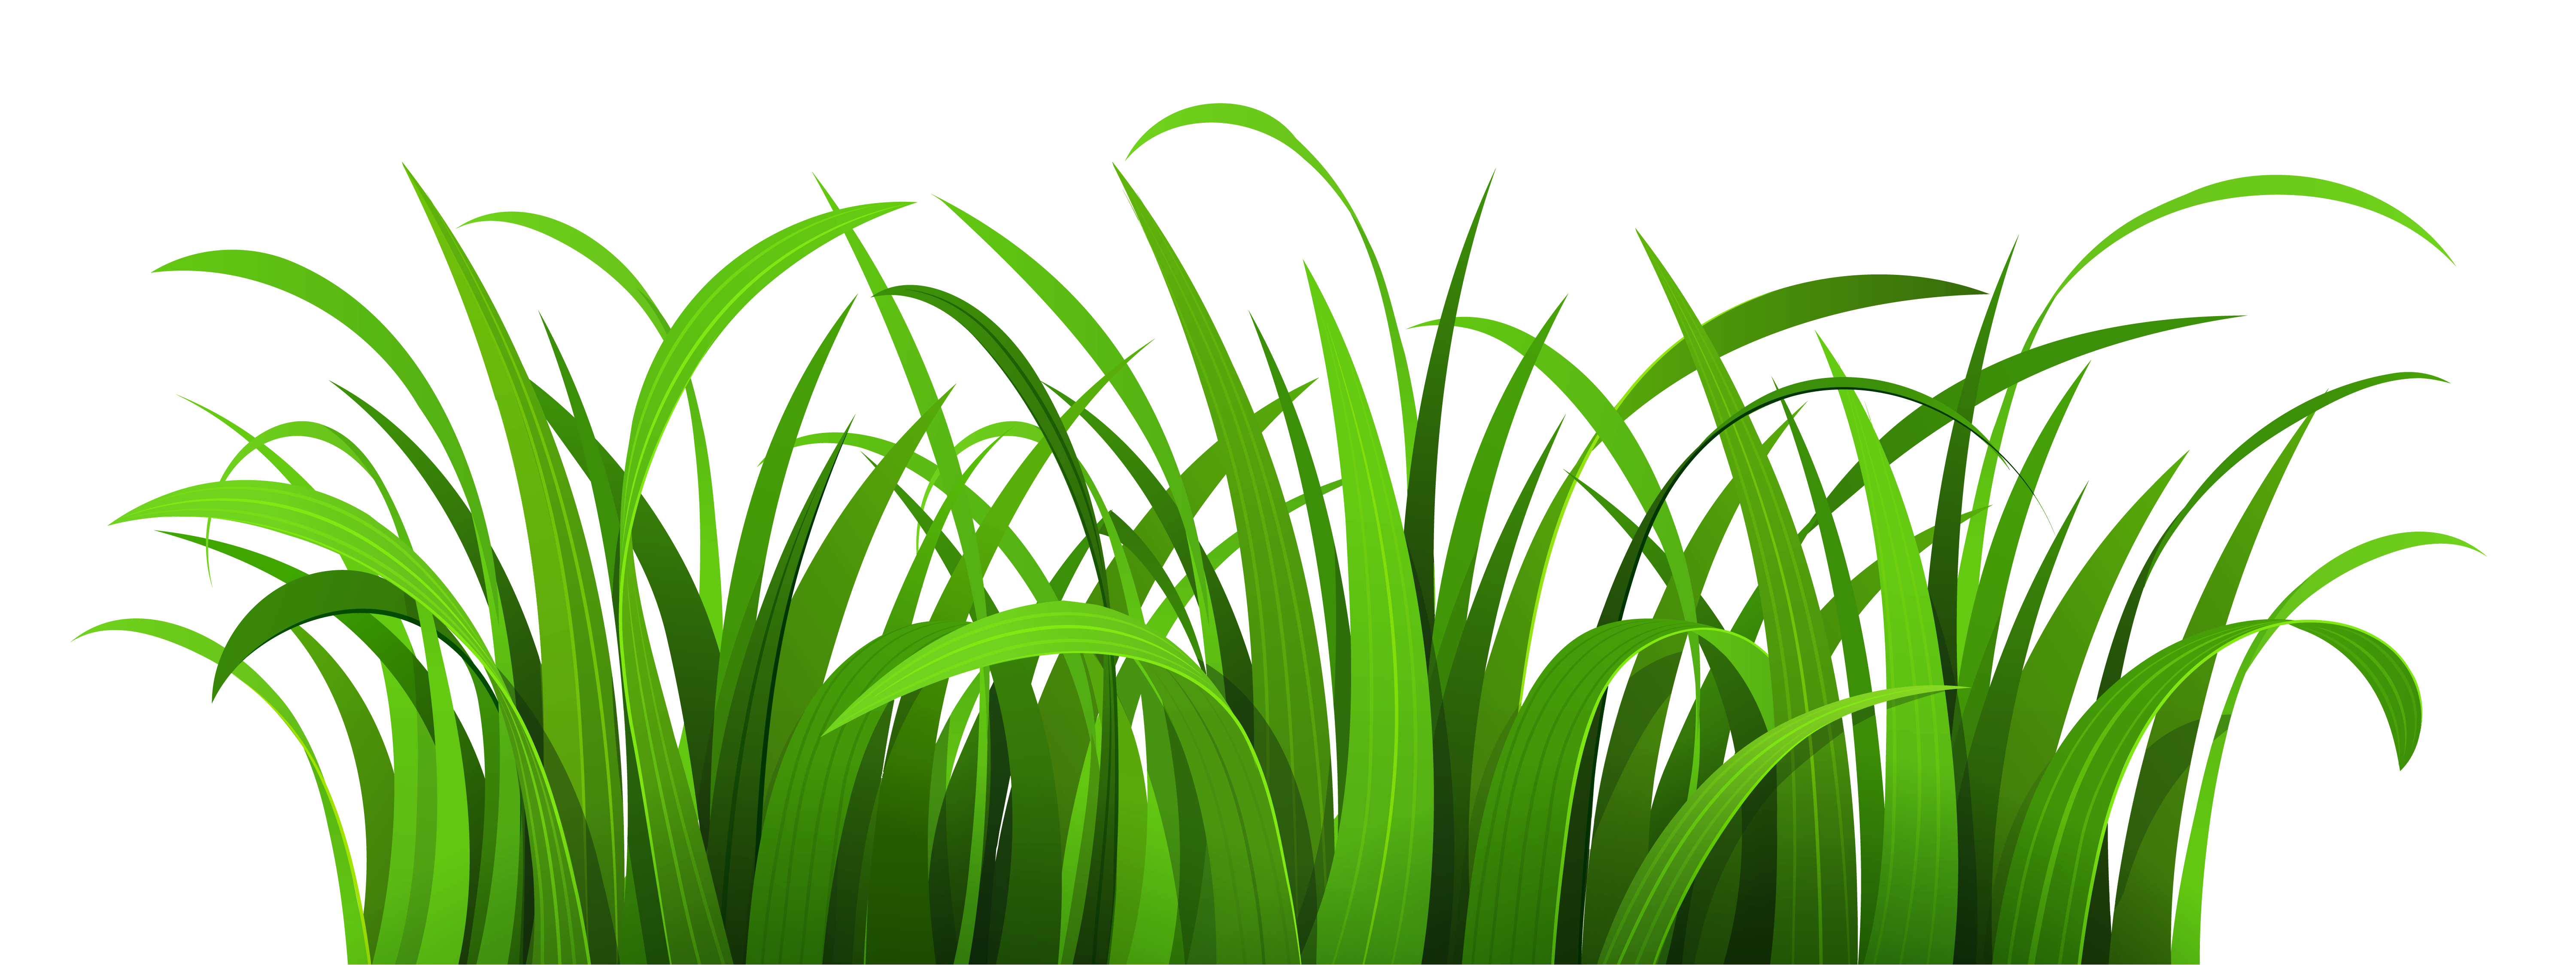 Greengrass Clip Art